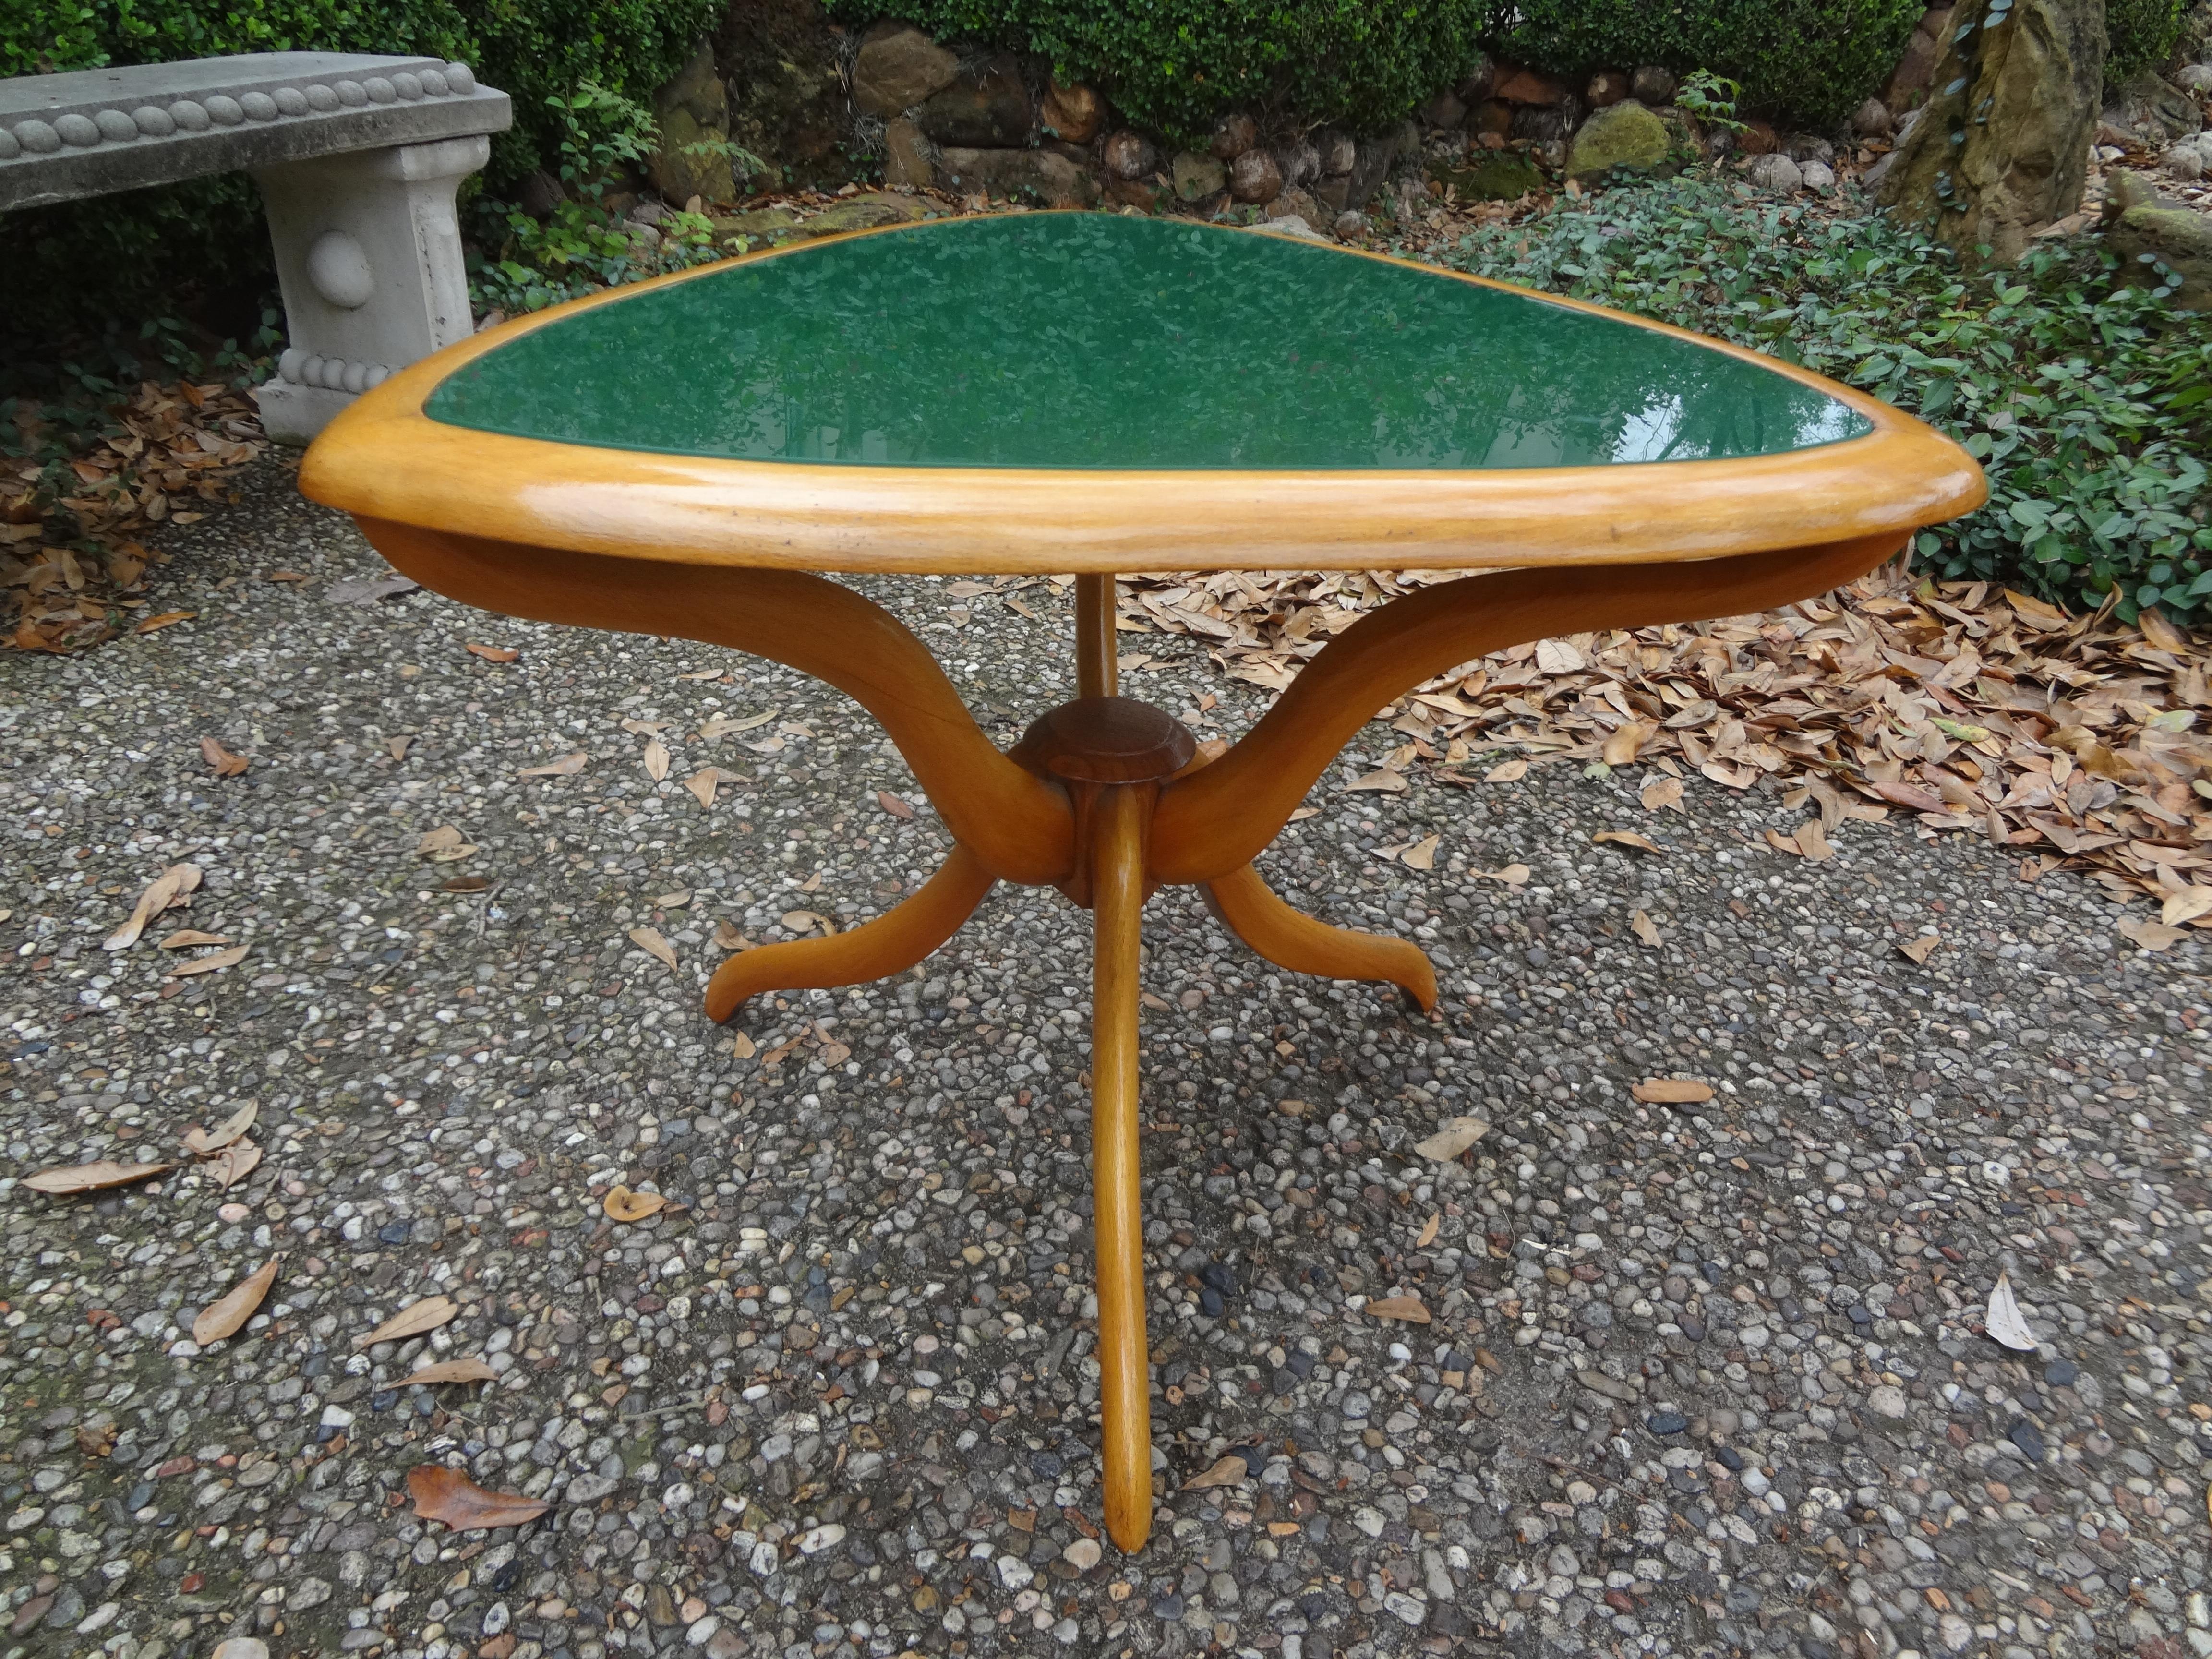 Italienischer moderner, von Gio Ponti inspirierter Tisch.
Atemberaubender moderner italienischer Tisch, inspiriert von Gio Ponti. Dieser formschöne italienische Tisch wurde aus Ahornholz mit großartigen Linien und einer ungewöhnlichen grünen